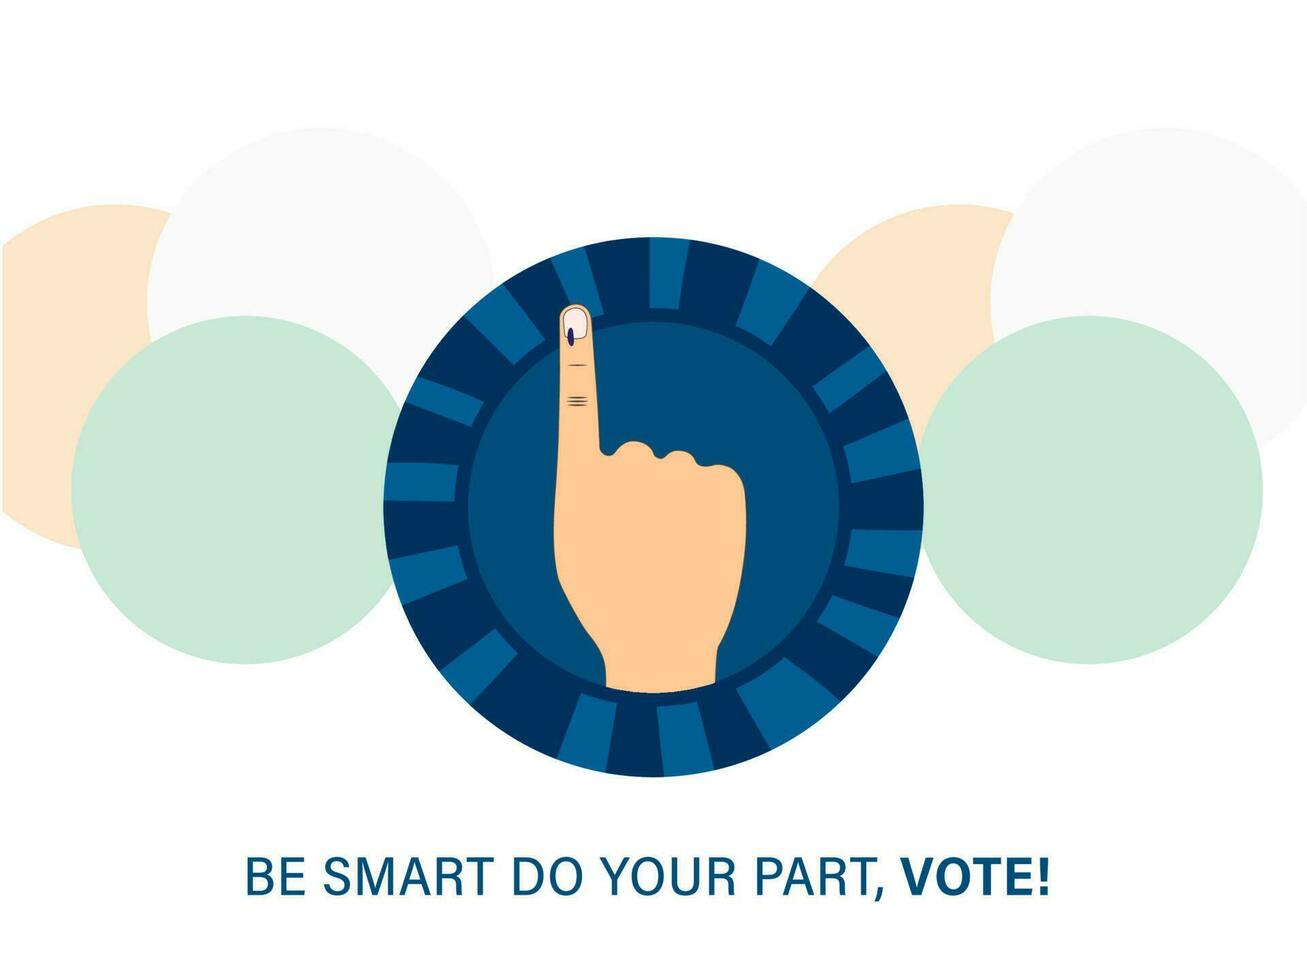 vara smart do din del, rösta font med röstning mark index finger över blå tecken och genomskärning av tre cirklar på vit bakgrund. vektor